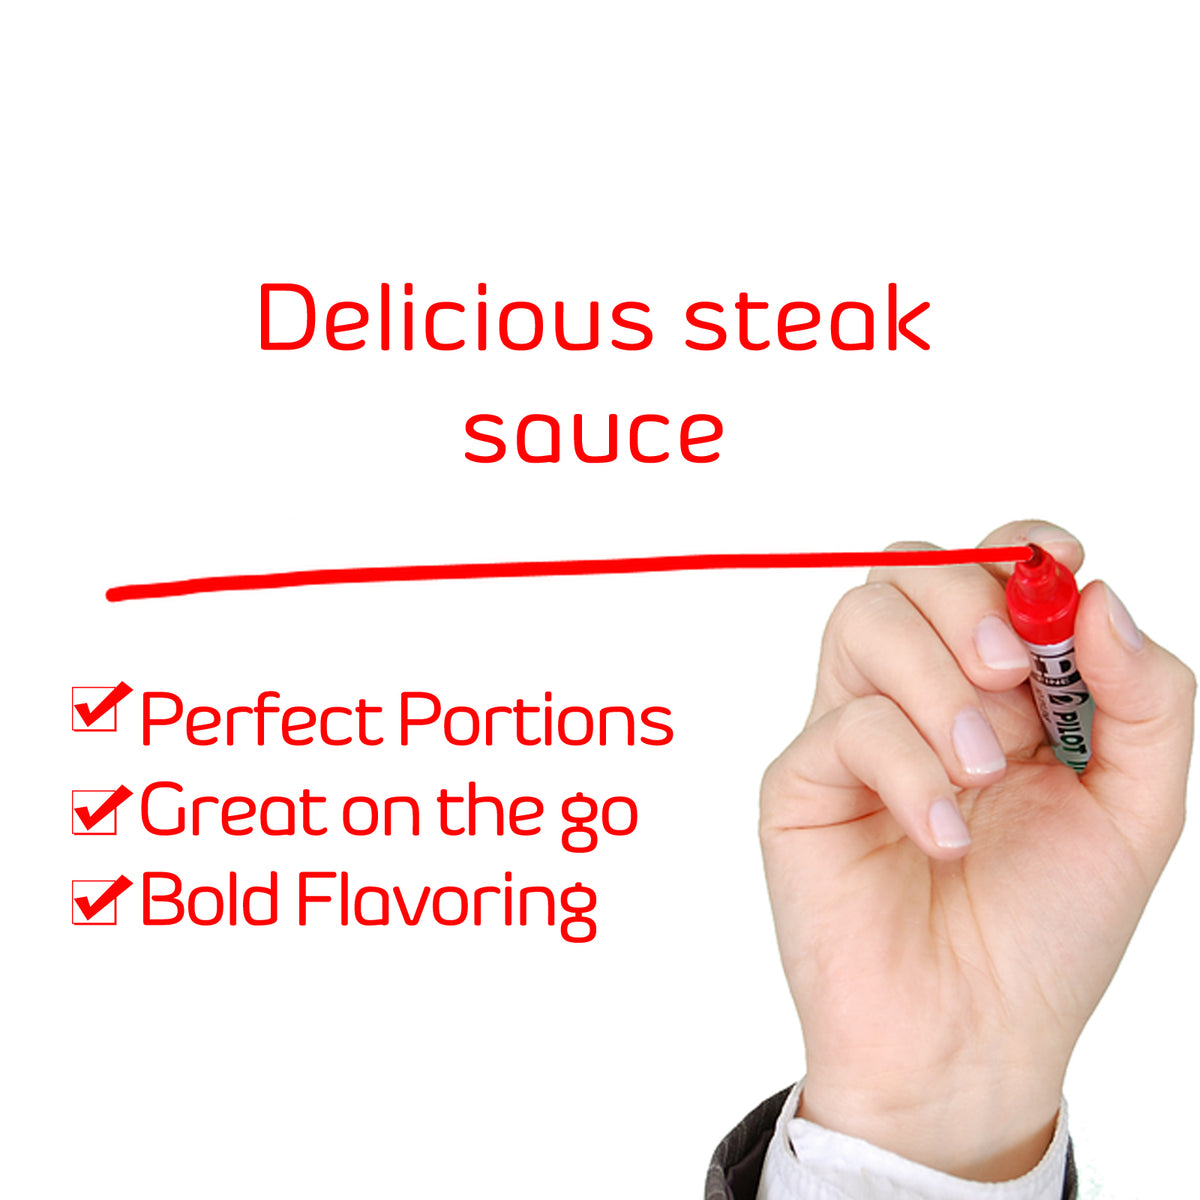 A1® Steak Sauce (packet)